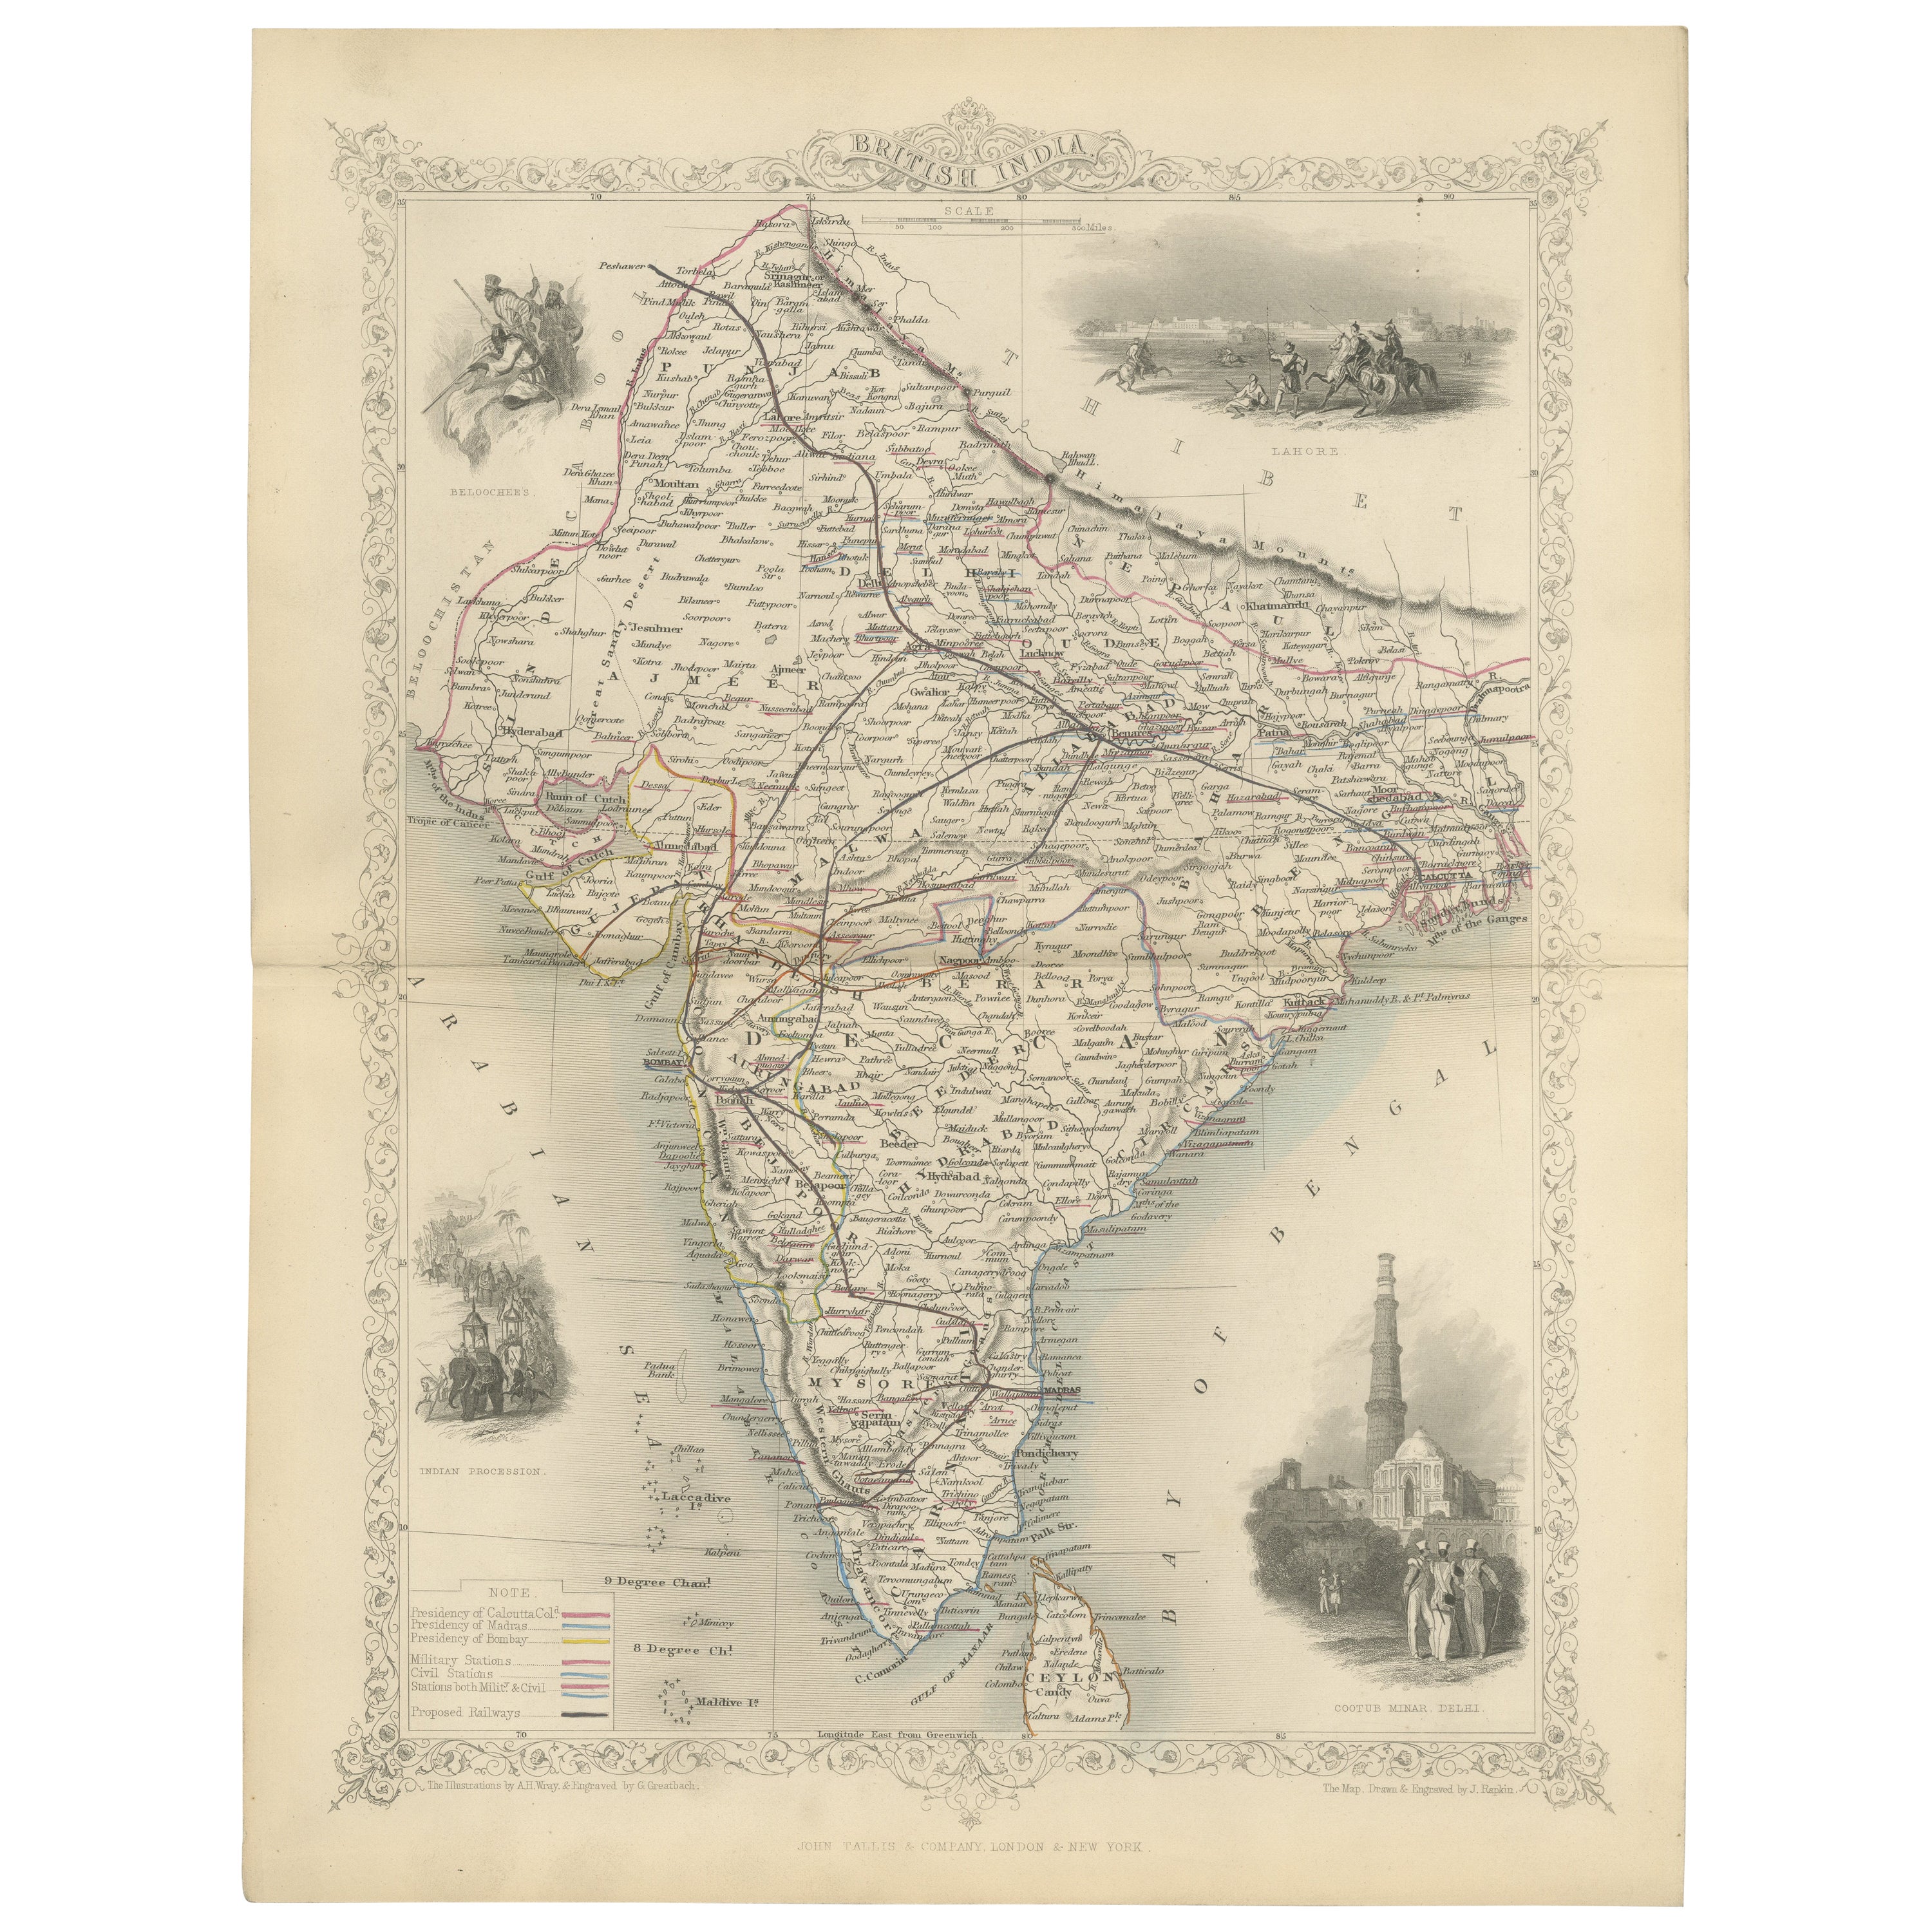 Dekorative Karte Indiens aus der Mitte des 19. Jahrhunderts mit kulturellen und natürlichen Vignetten